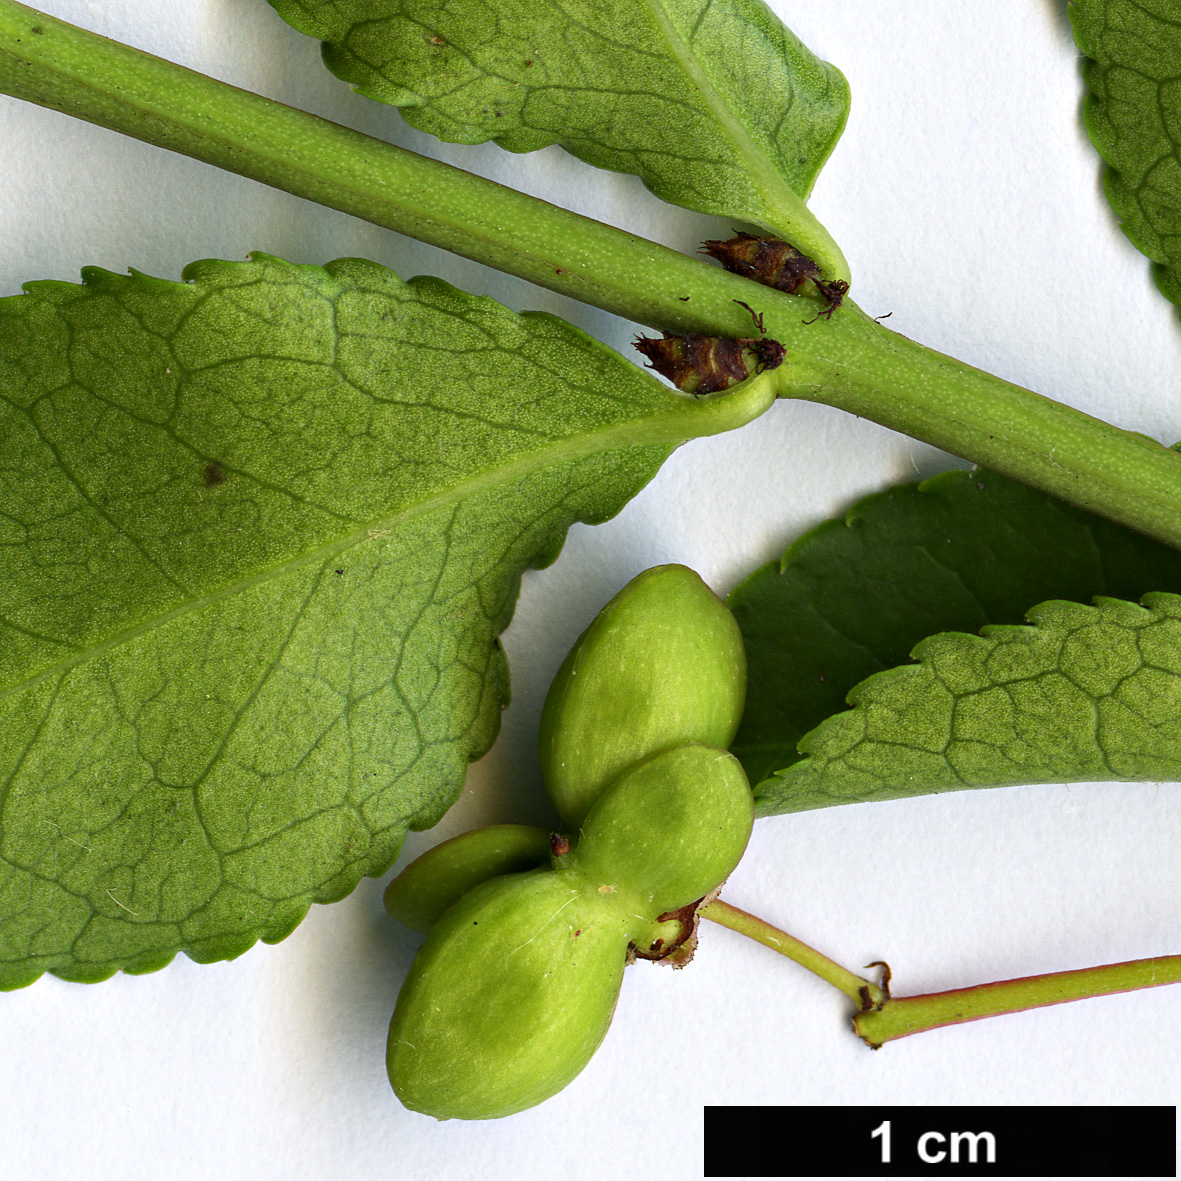 High resolution image: Family: Celastraceae - Genus: Euonymus - Taxon: alatus - SpeciesSub: var. ciliatodentatus